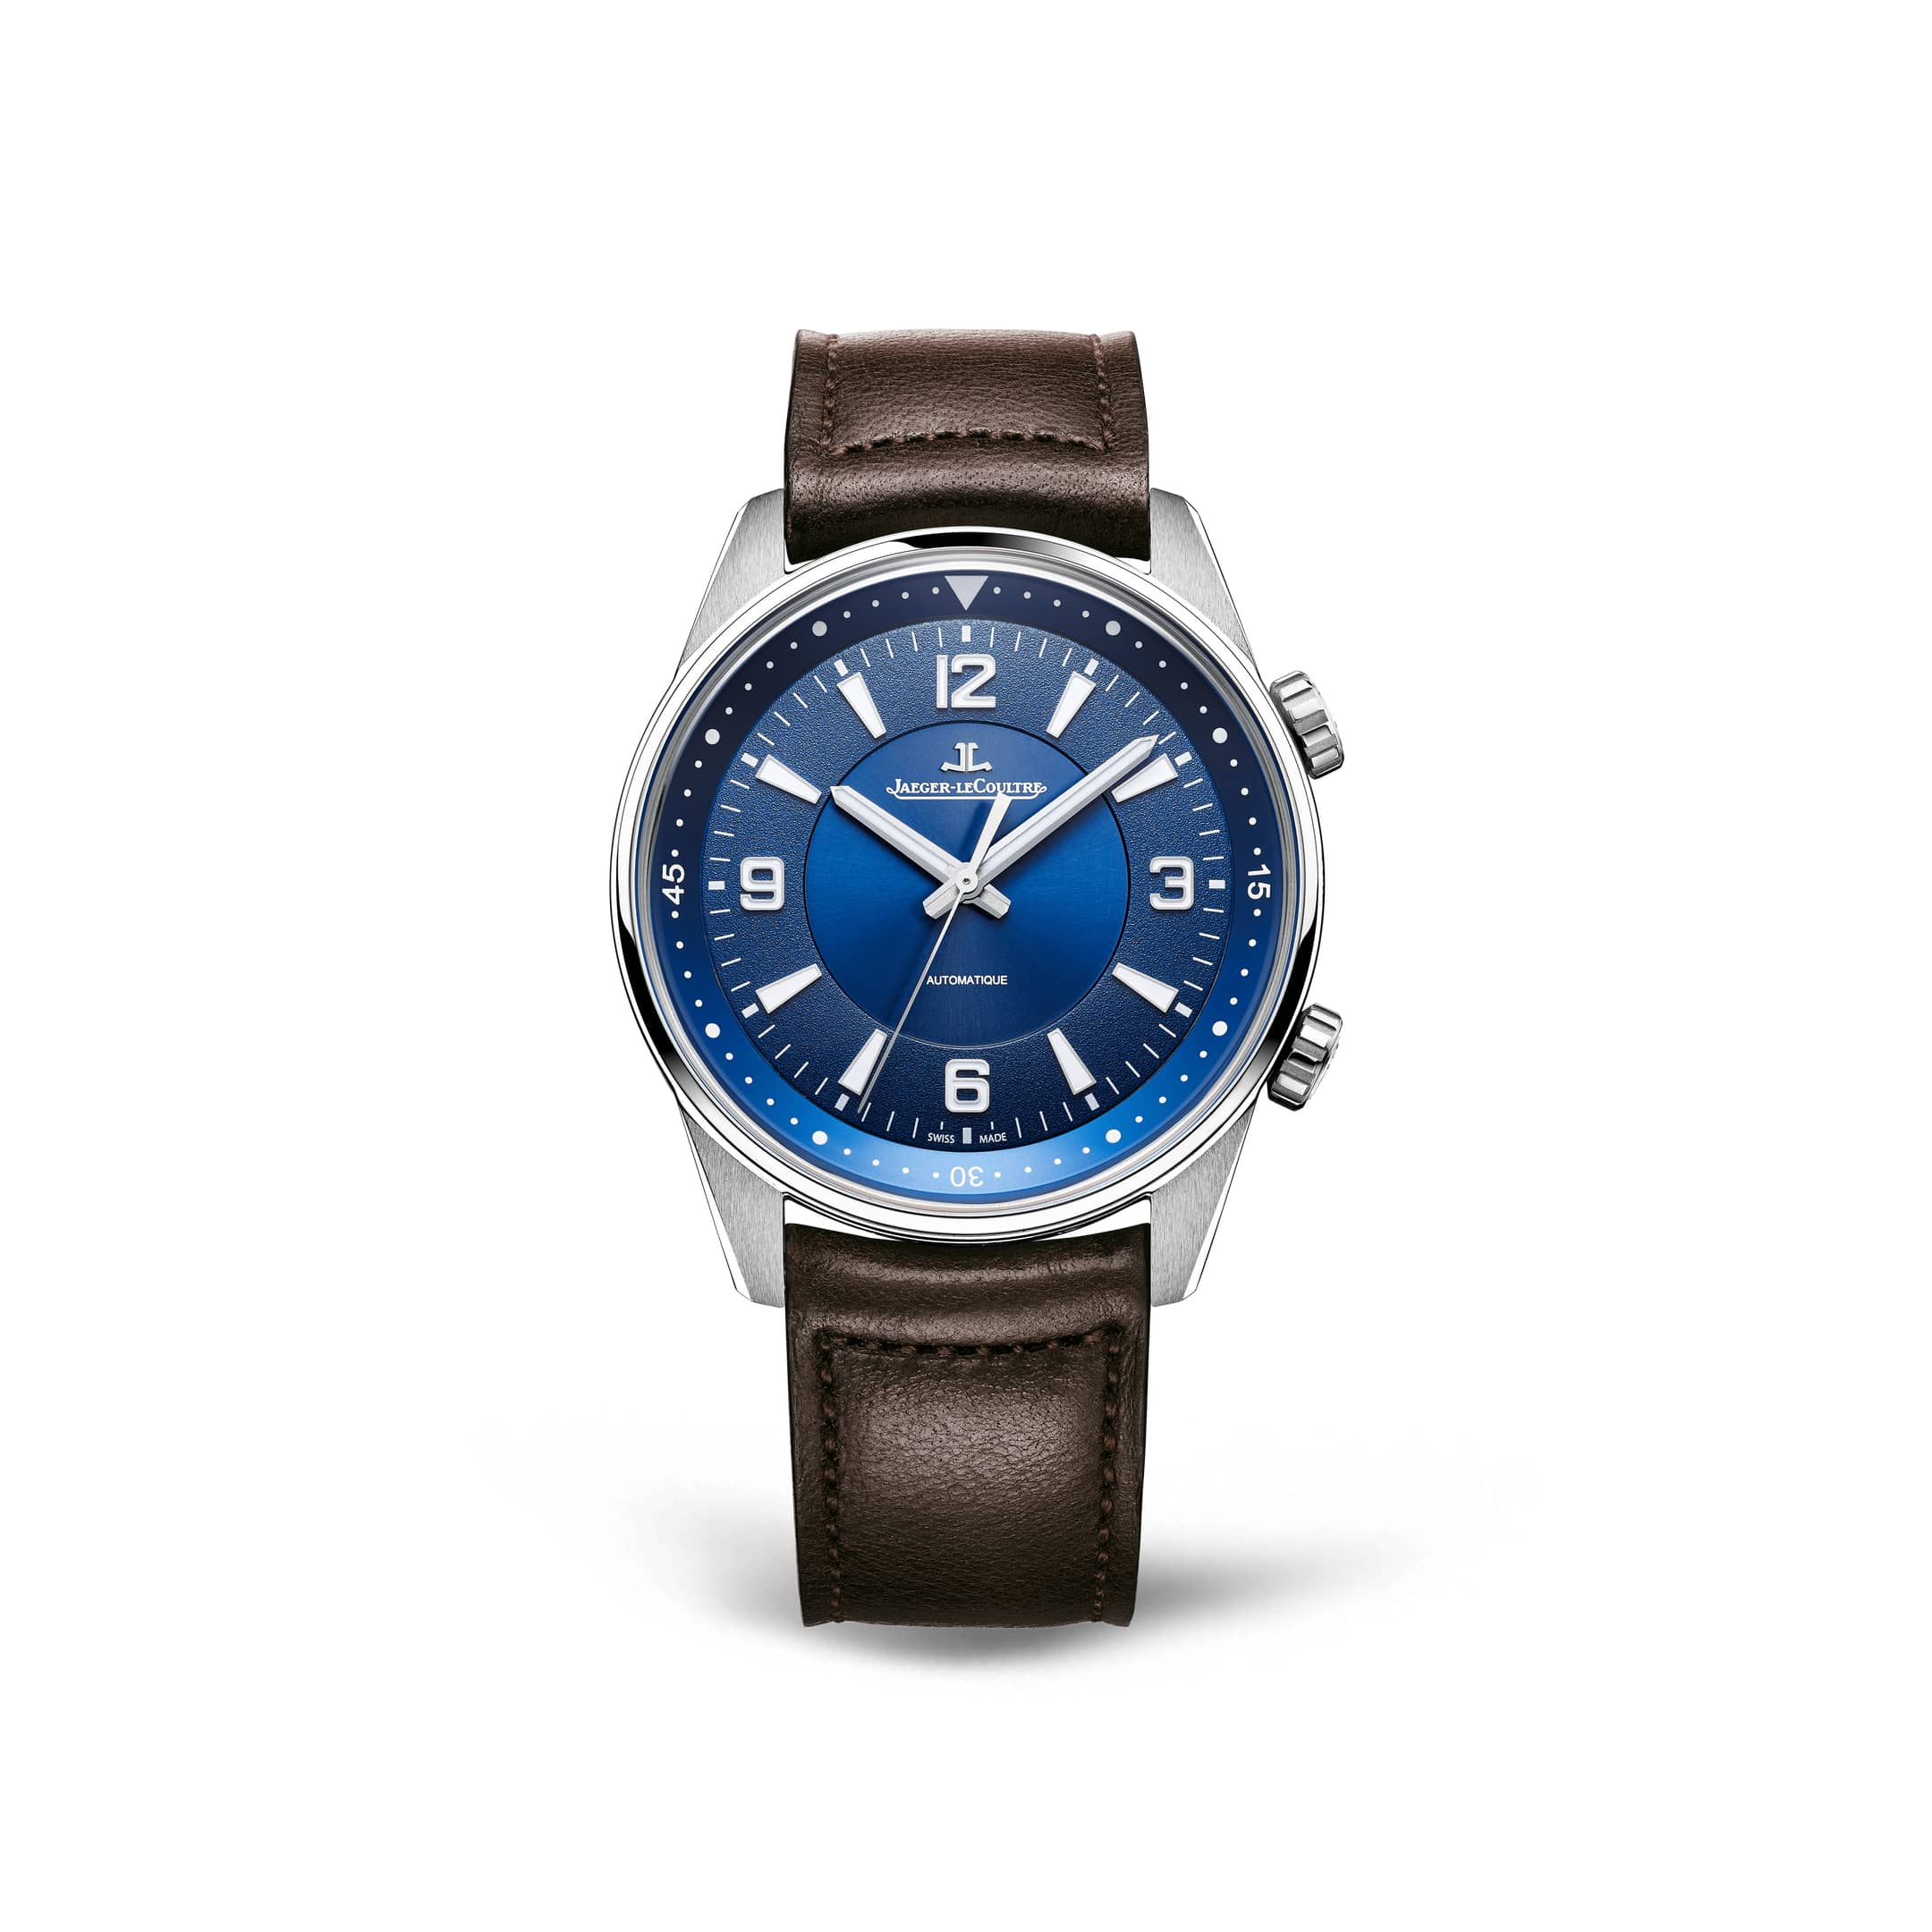 ジャガー ルクルト Jaeger-LeCoultre Q9008480 ブルー メンズ 腕時計